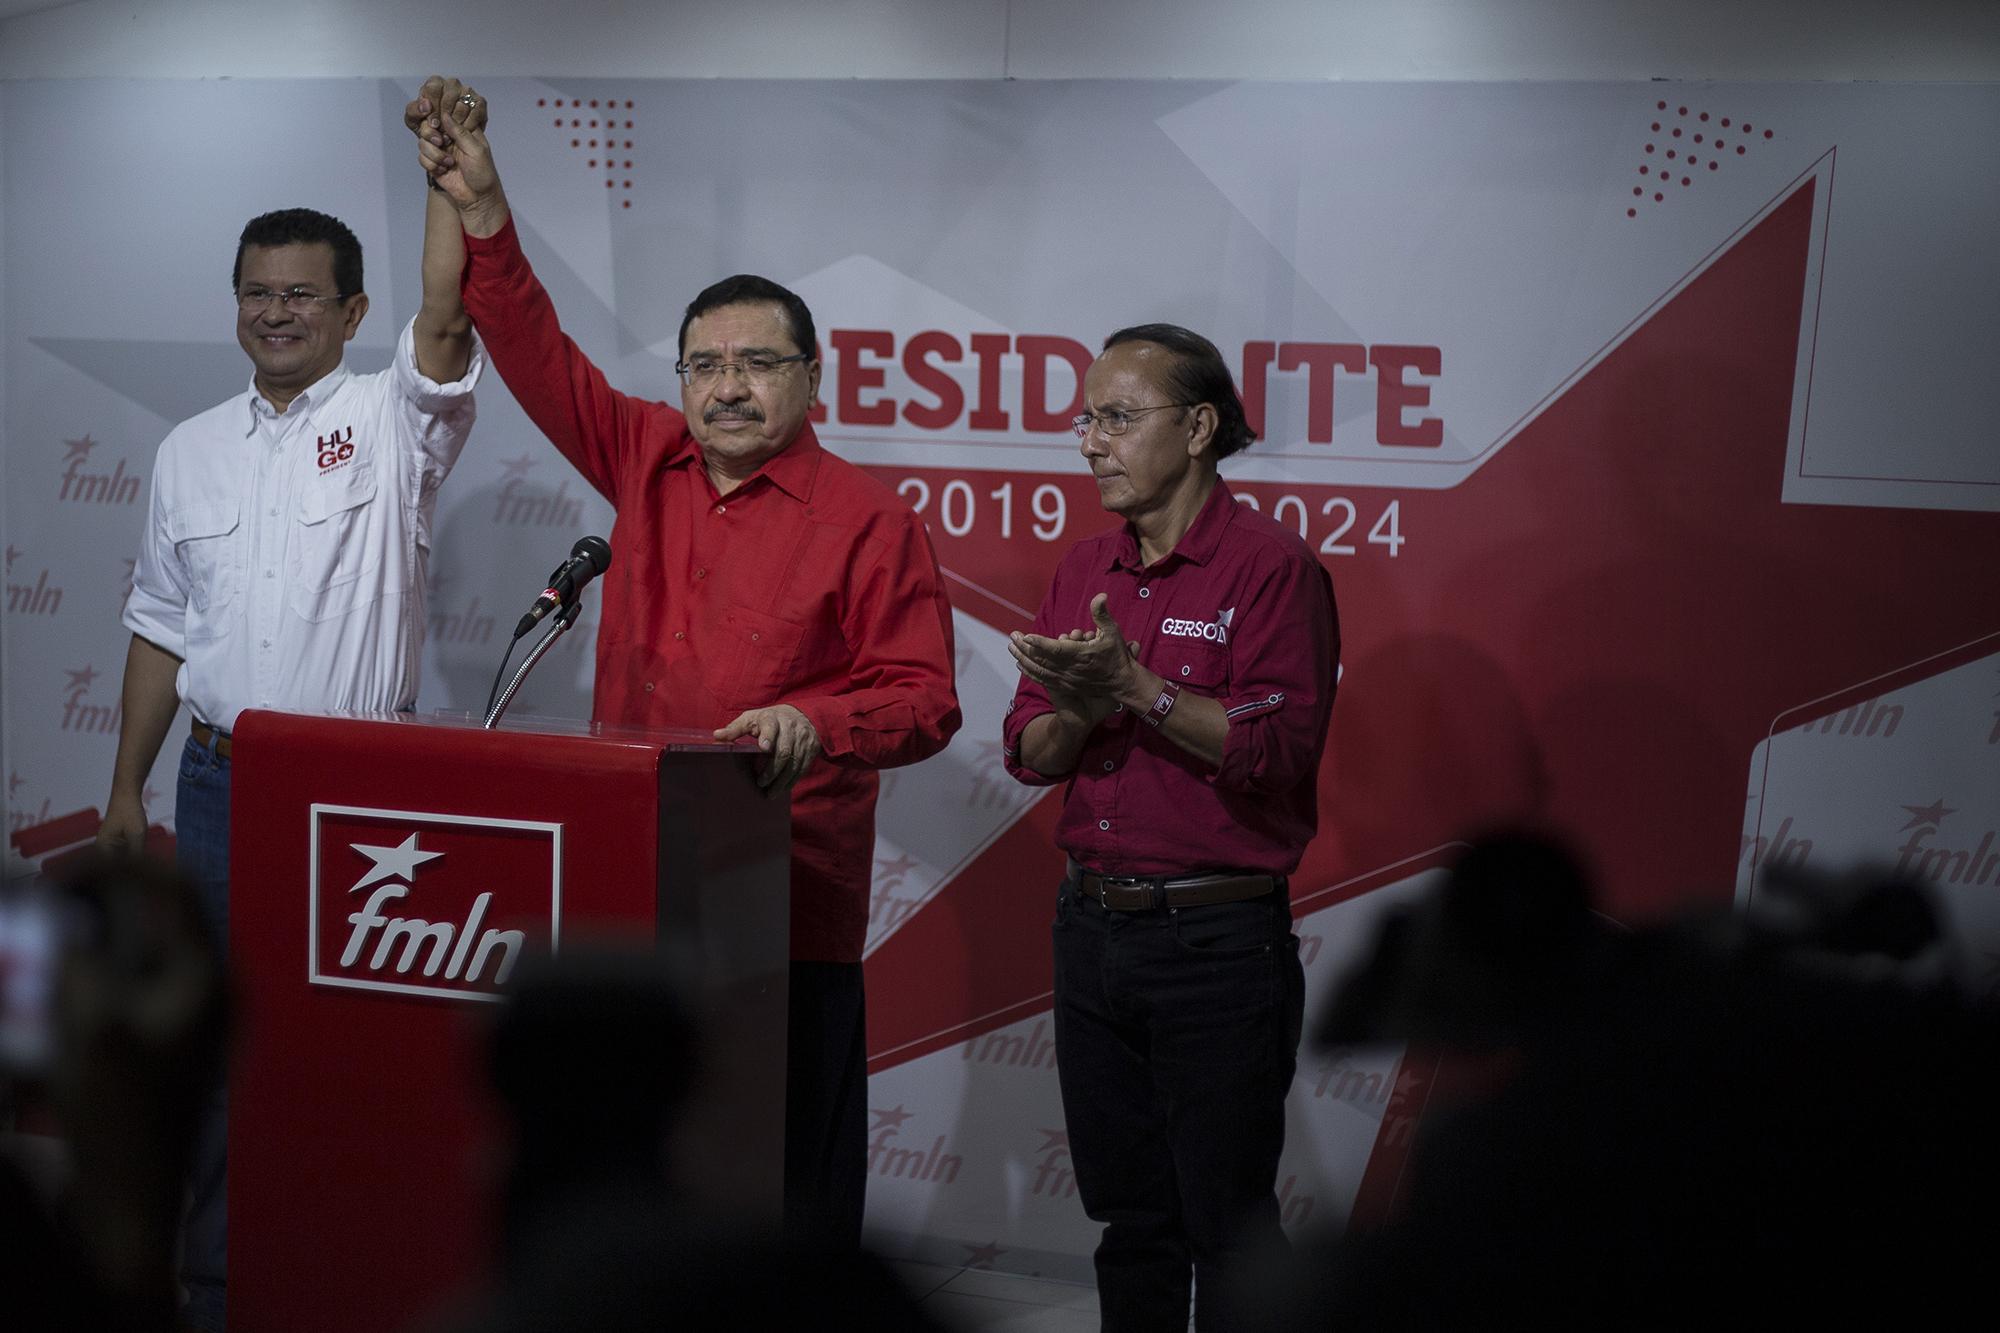 El secretario general del FMLN, Medardo González, levanta la mano a Hugo Martínez, vencedor de las elecciones internas del FMLN para elegir candidato presidencial.  Foto de El Faro, por Víctor Peña.